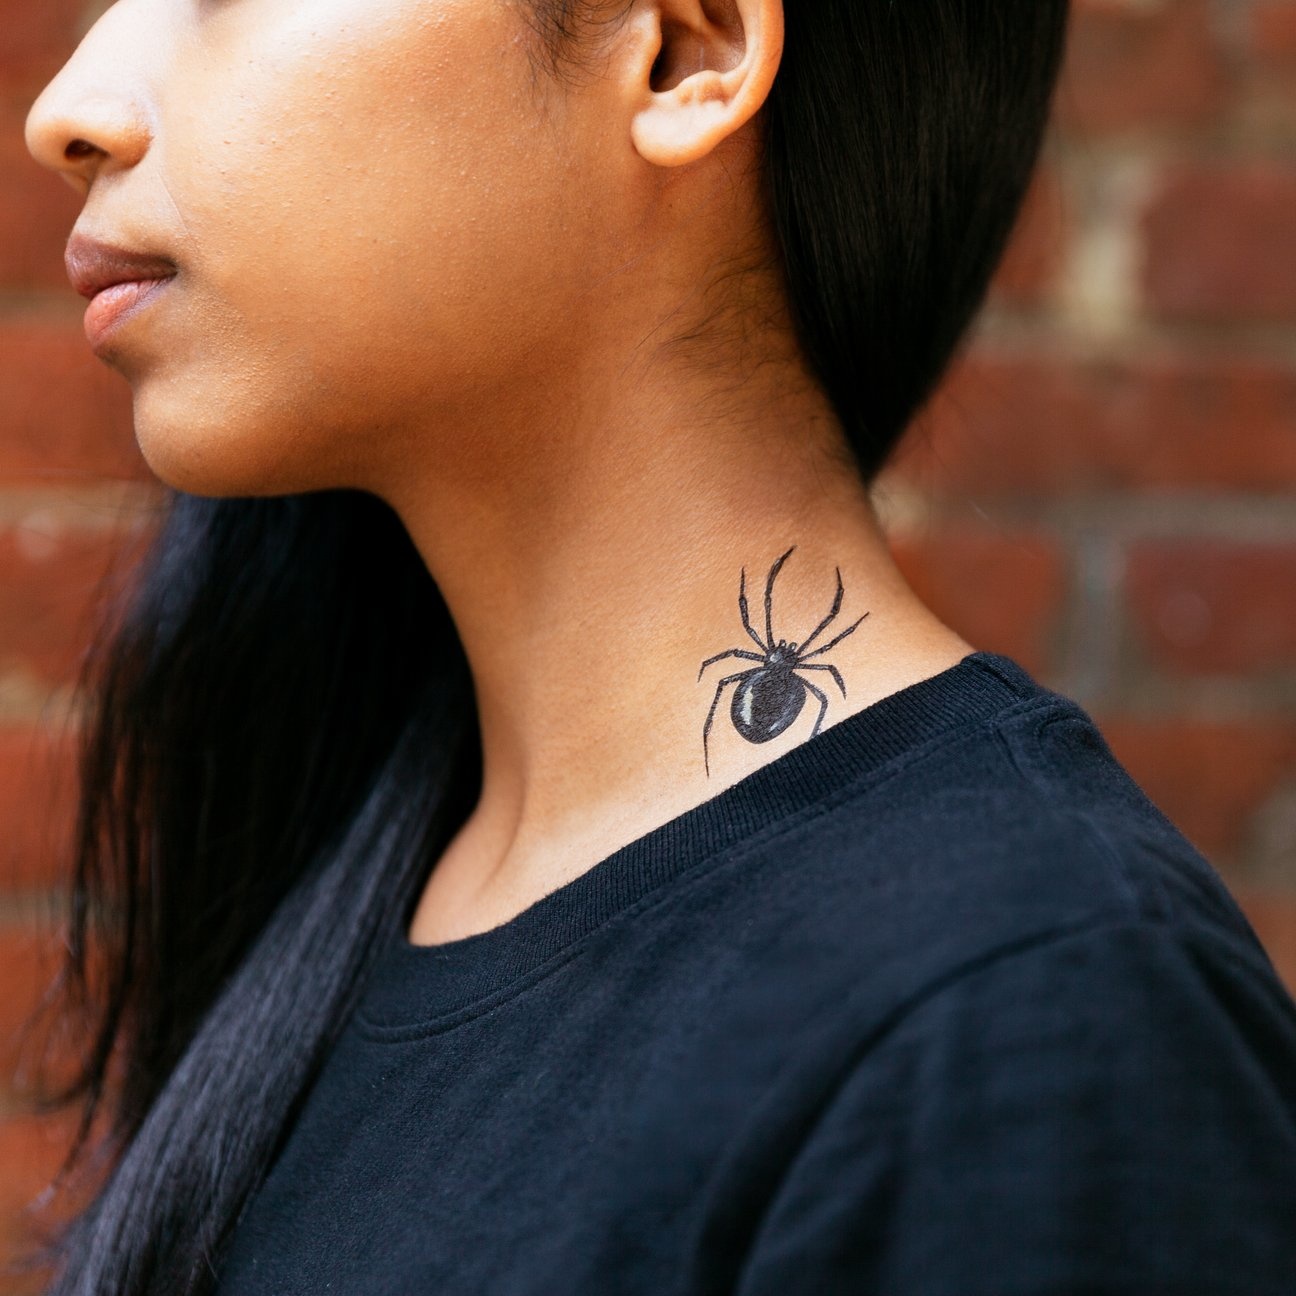 Tattly - TA Tattly - Black Widow Spider Tattoo